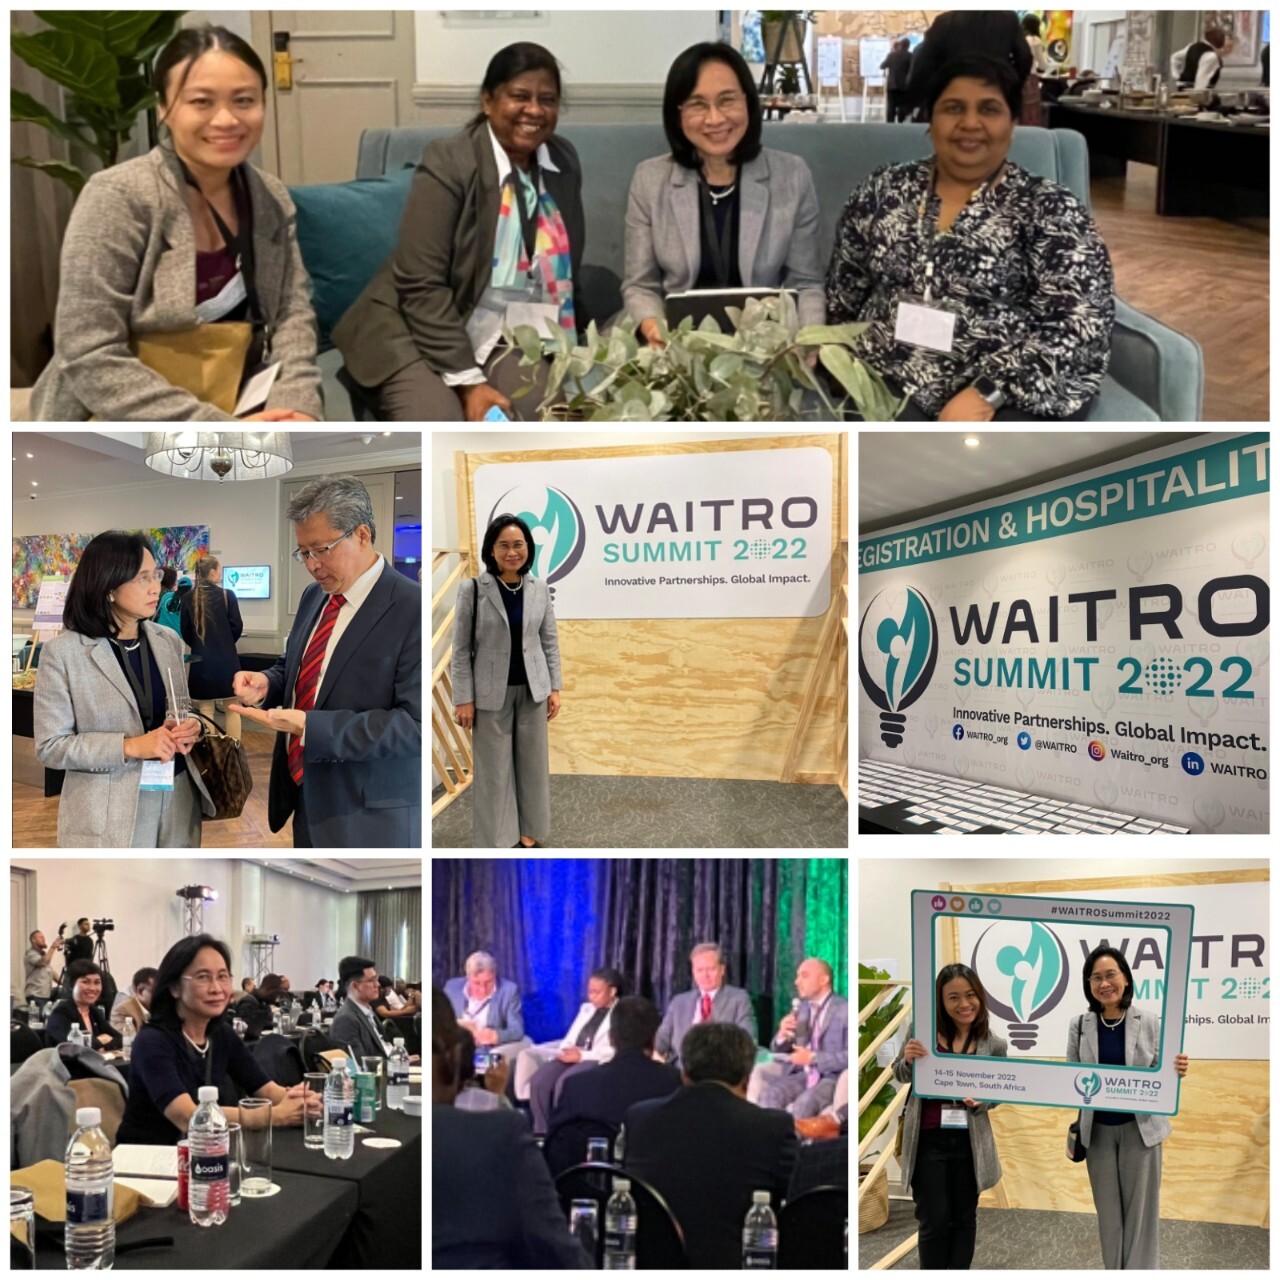 วว. เข้าร่วมการประชุม WAITRO Summit 2022 / General Assembly ณ เมืองเคปทาวน์ ประเทศแอฟริกาใต้